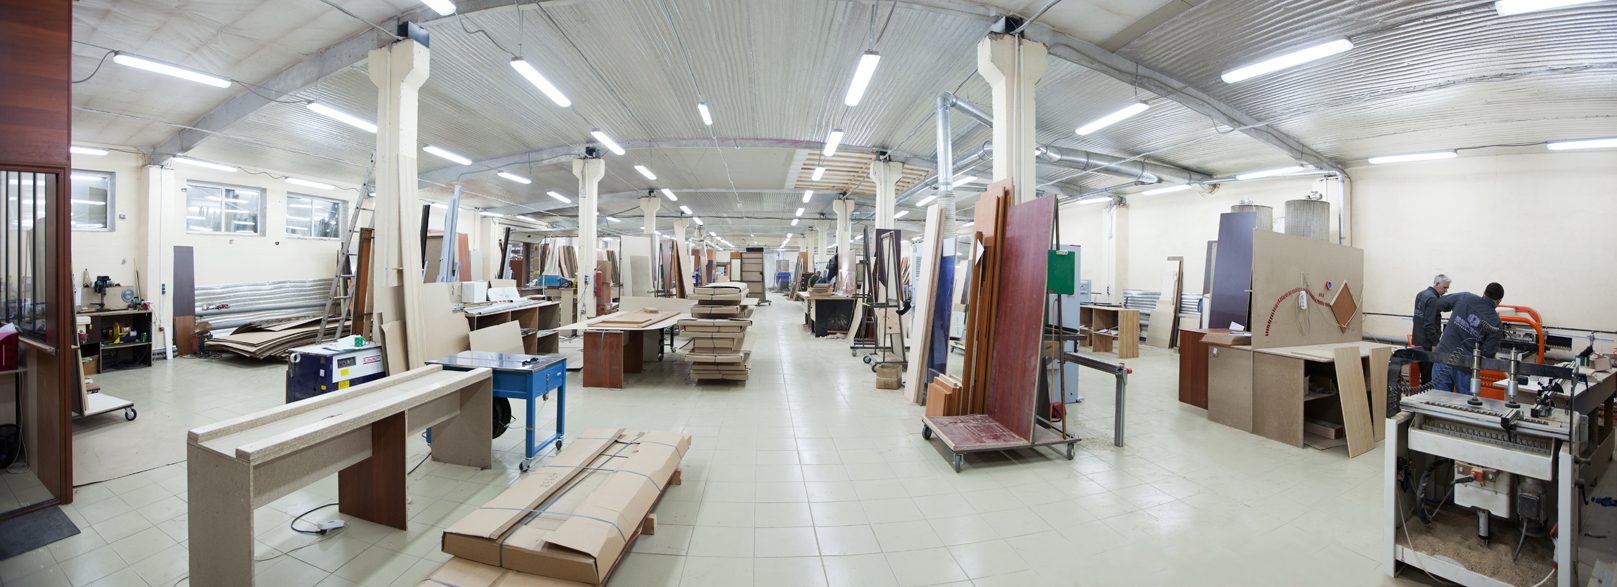 Открыть фабрику по производству мебели